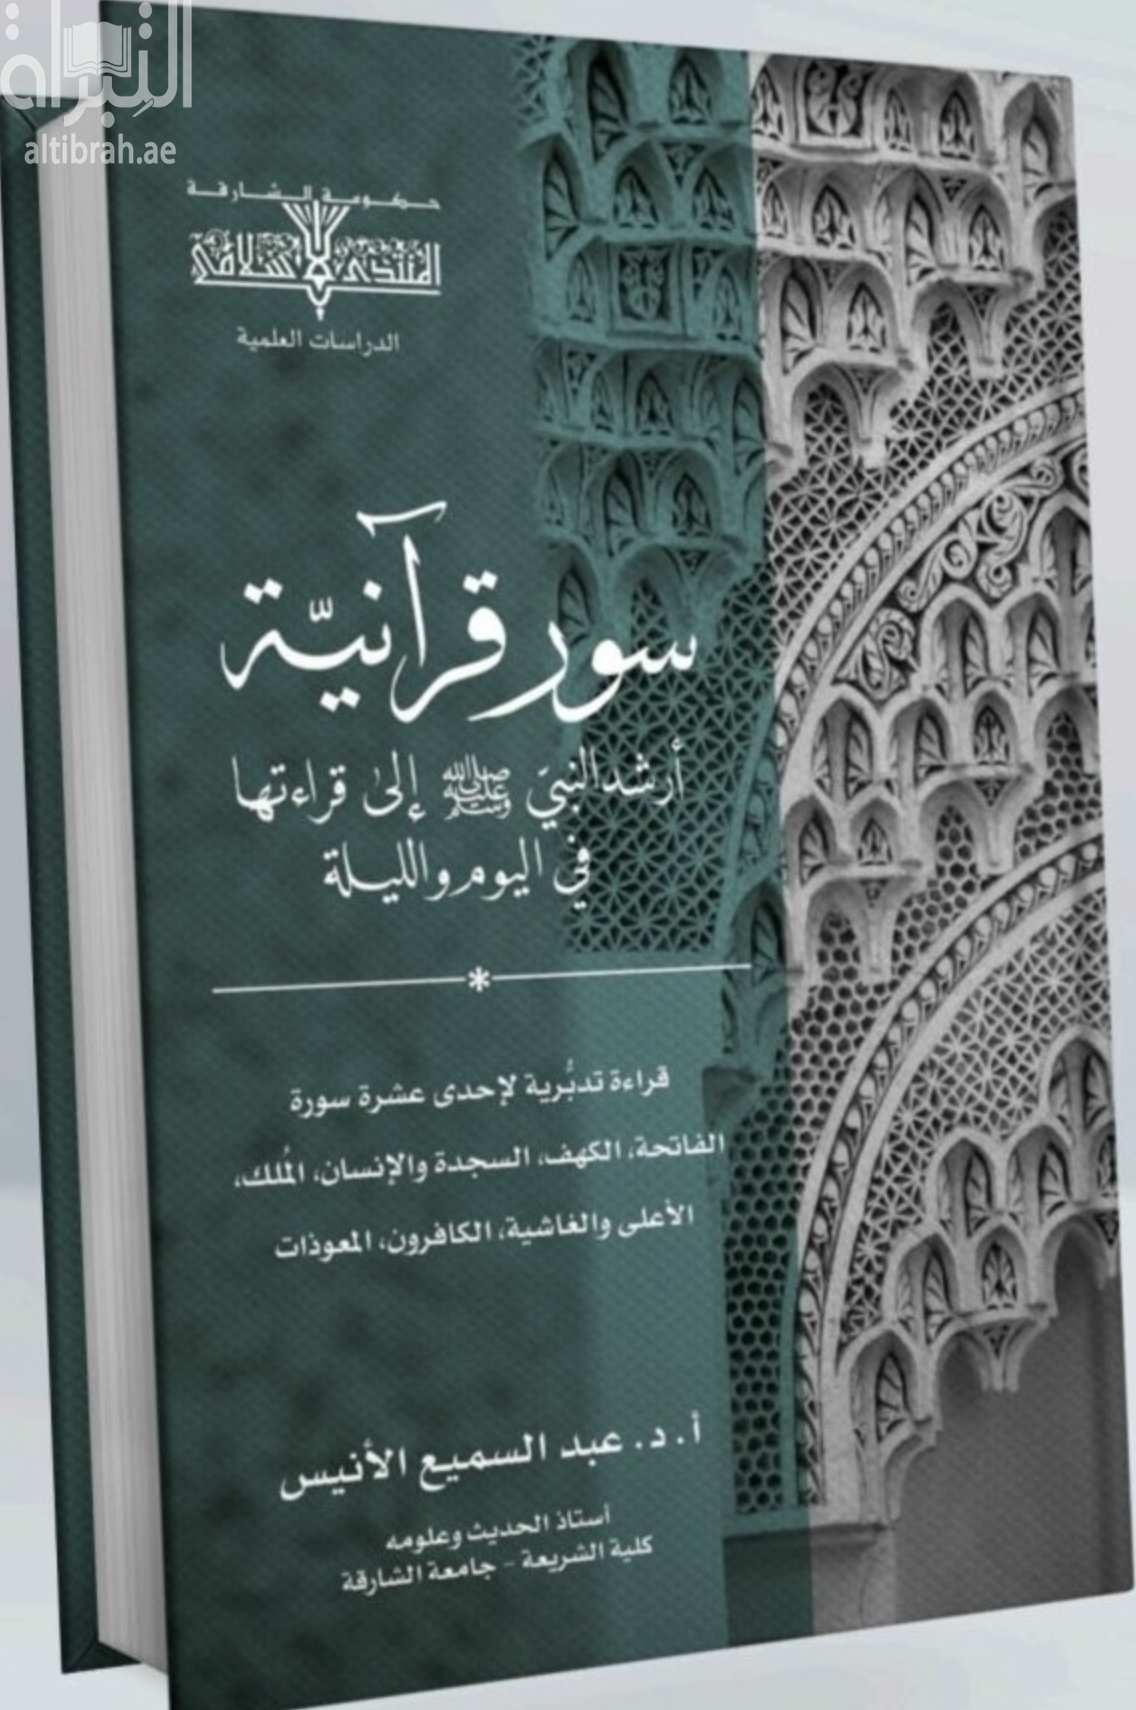 غلاف كتاب سور قرآنية أرشد النبي صلى الله عليه و سلم إلى قراءتها في اليوم و الليلة